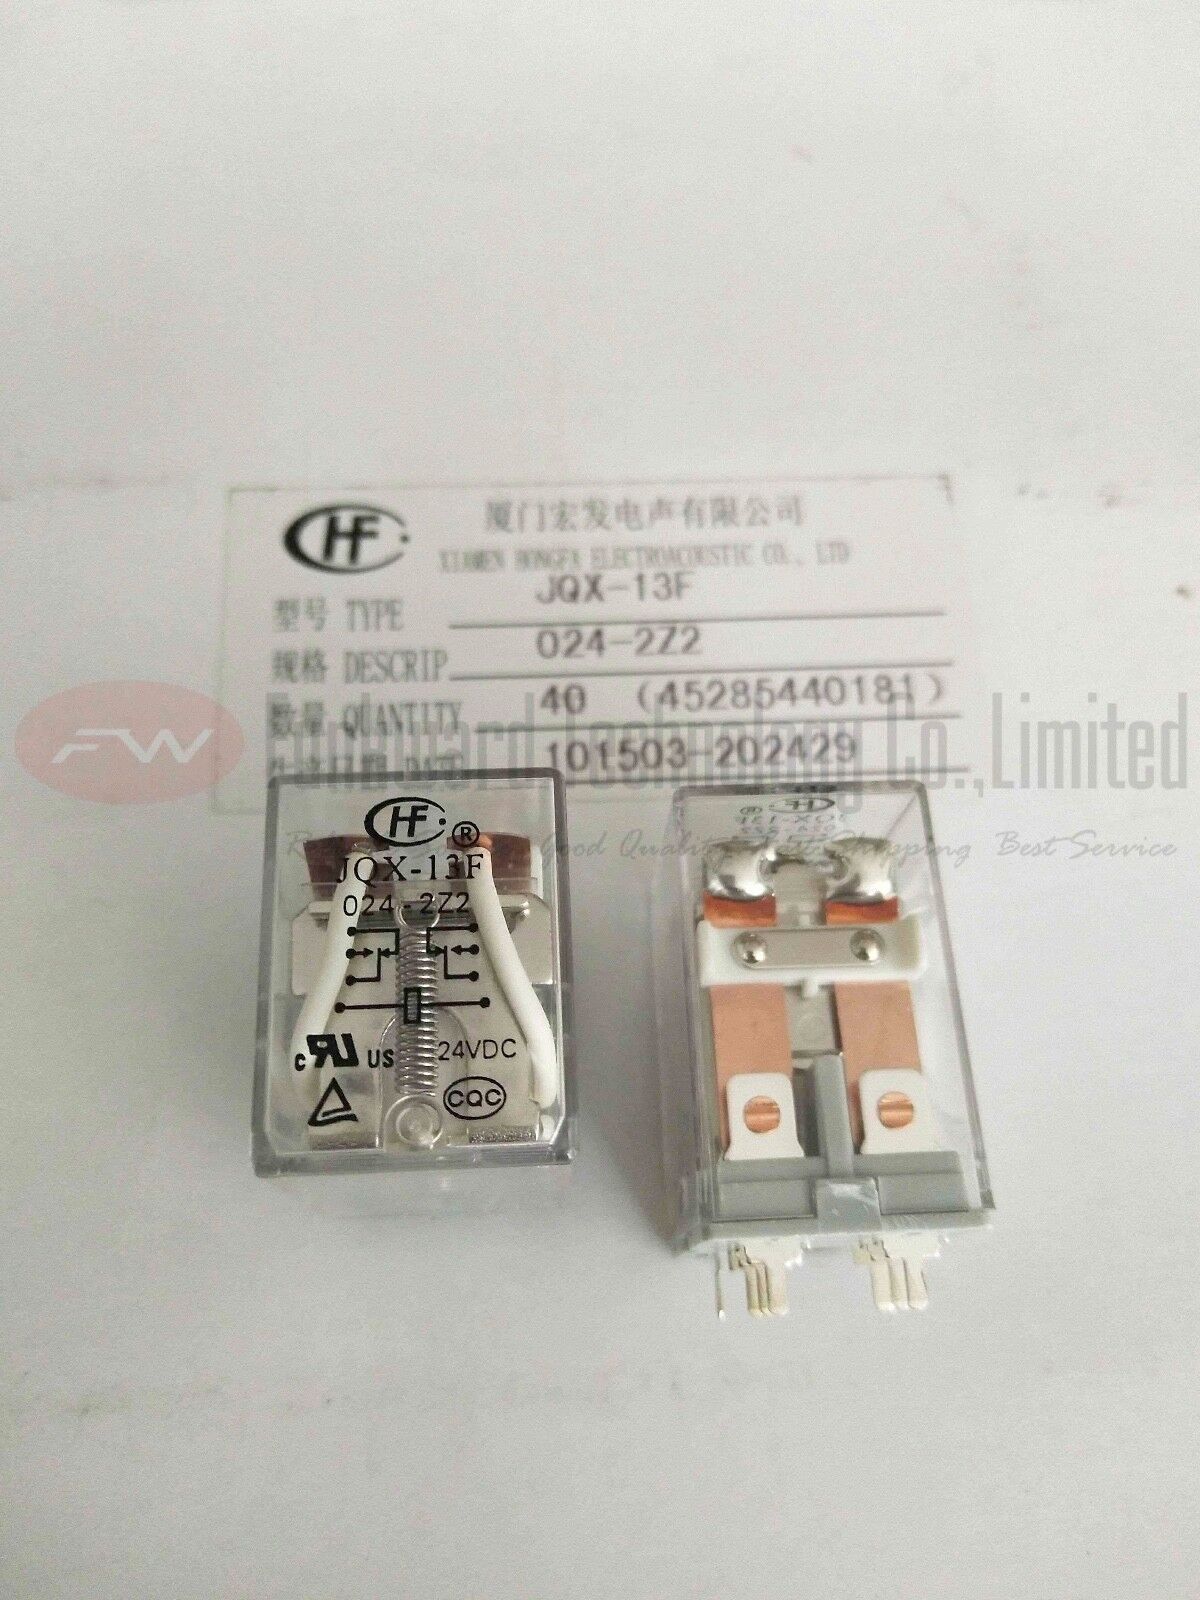 JQX-13F/024-2Z2 HF13F/024-2Z2 Intermediate Relay 10A 24VDC 8 Pins x 10pcs #F12